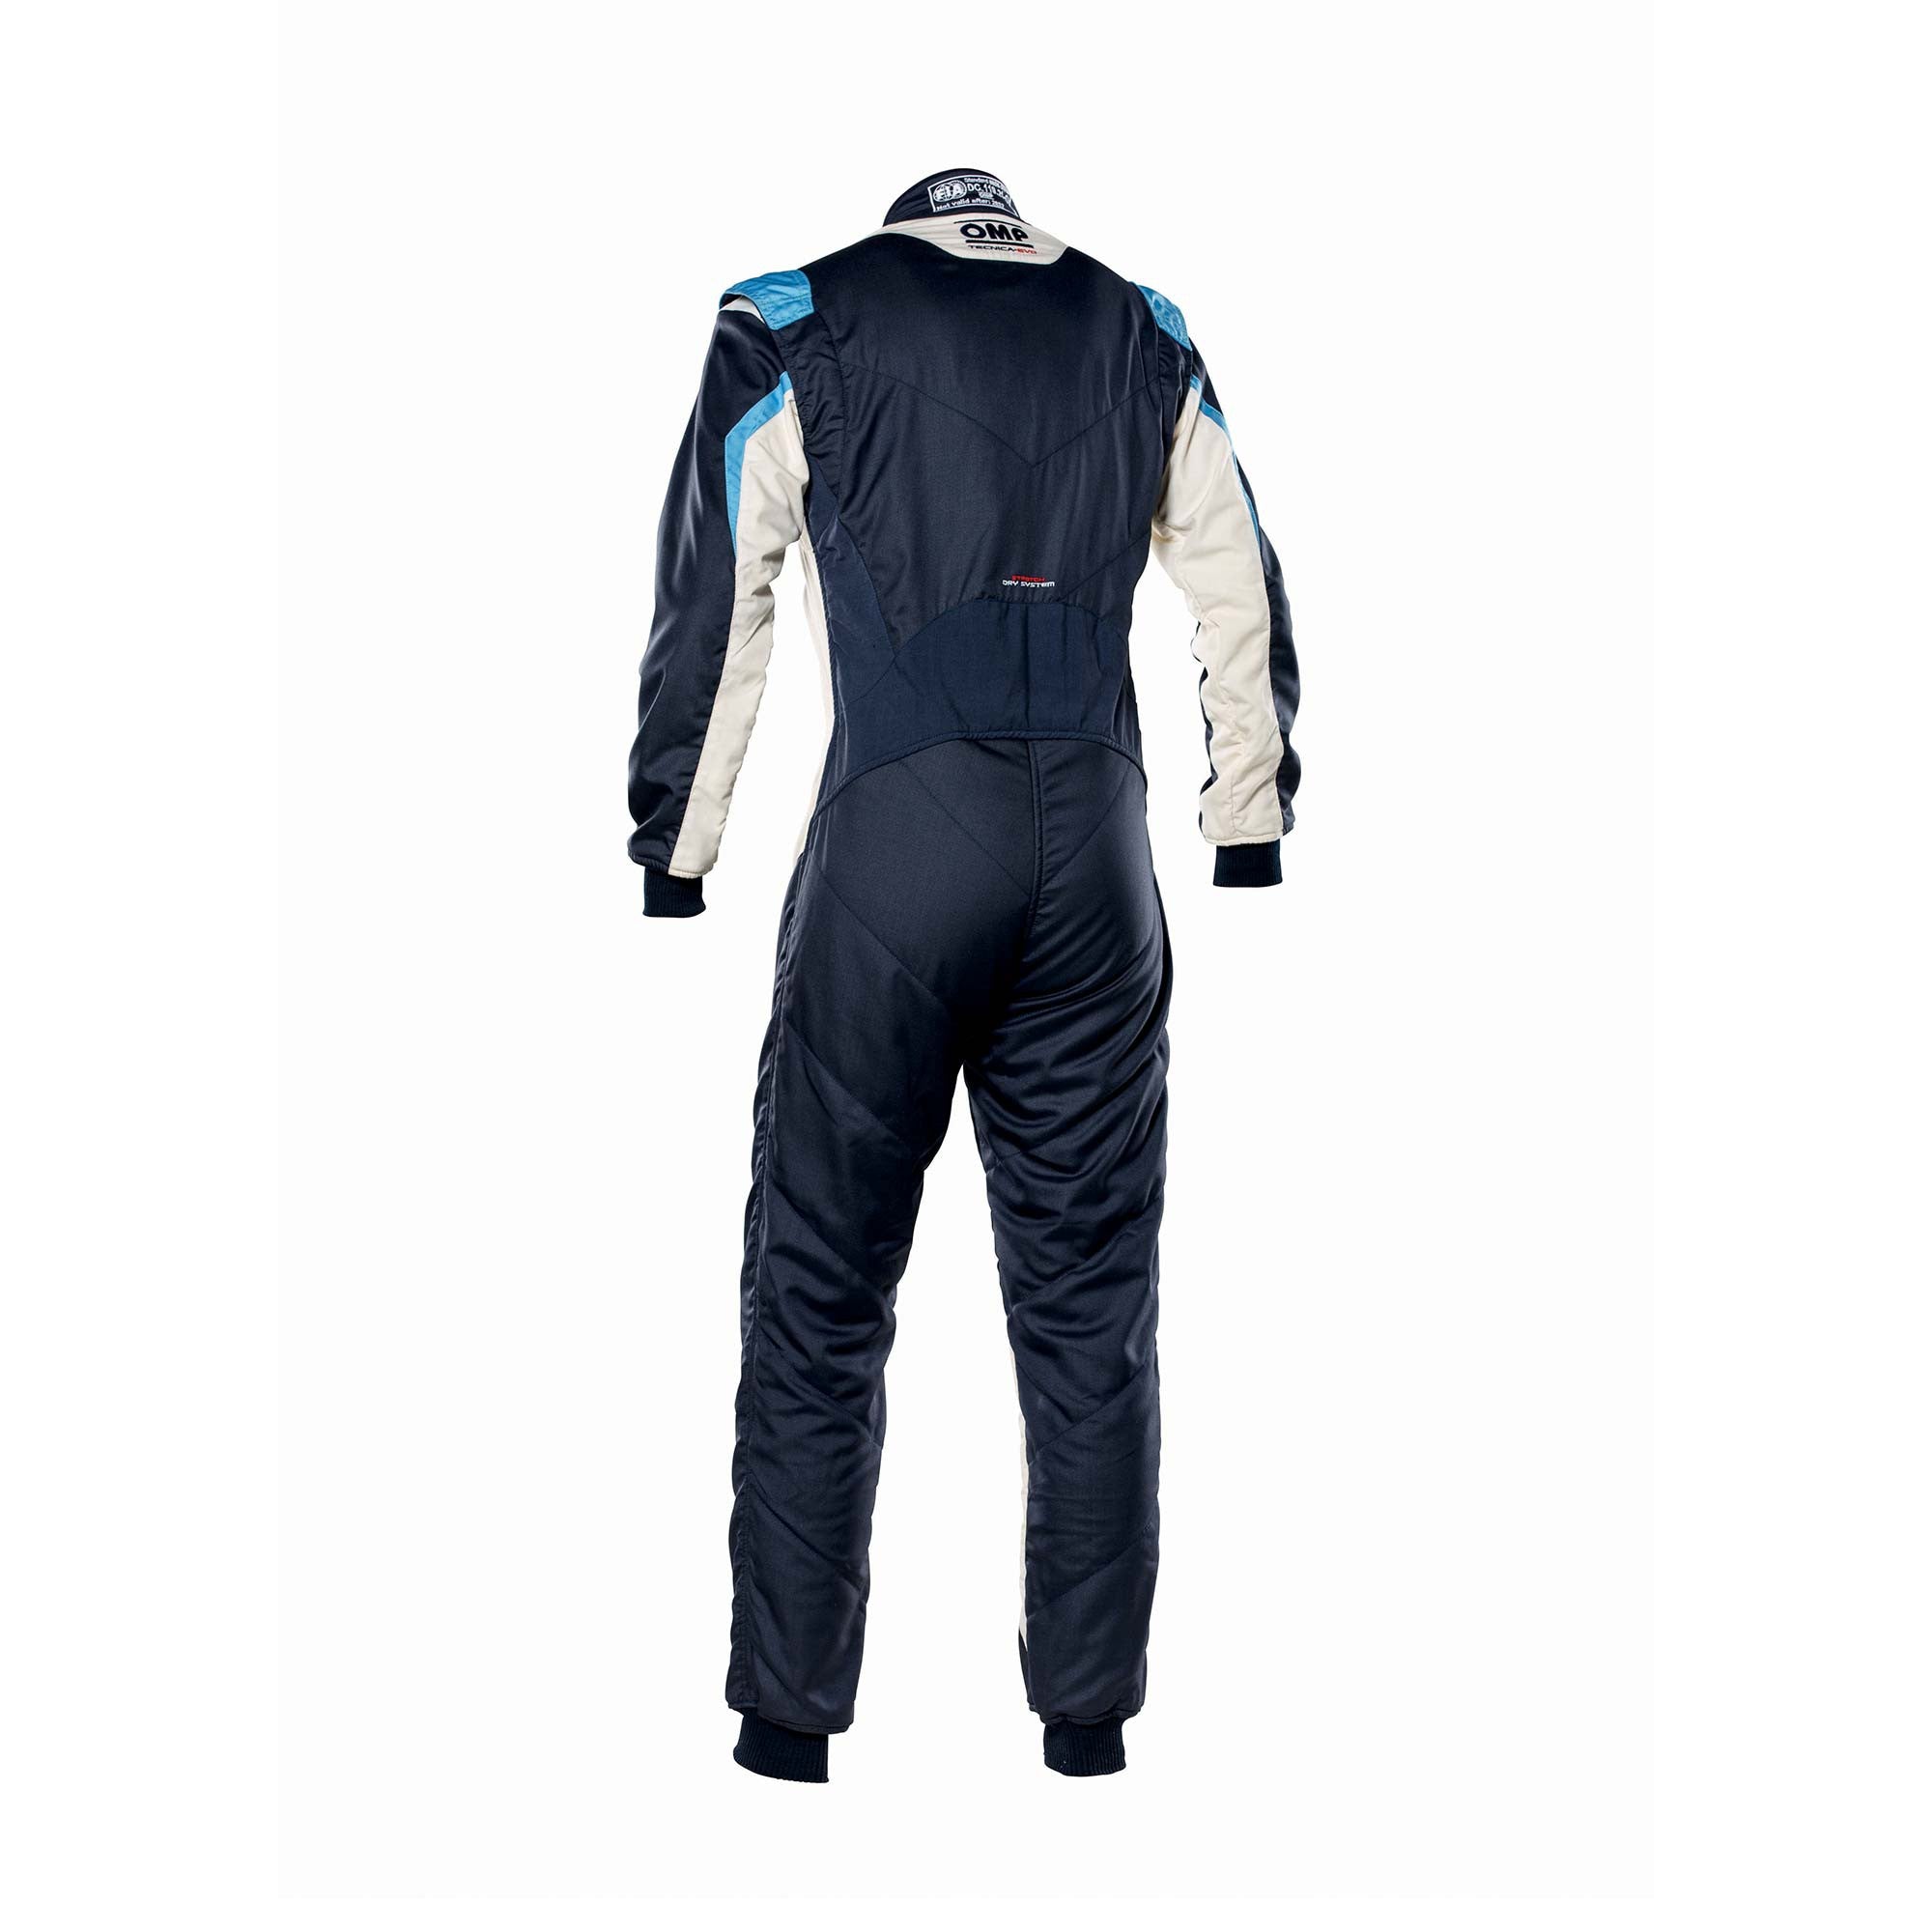 OMP IA0-1859-B01-246-56 Racing suit TECNICA EVO MY2021, FIA 8856-2018, navy blue/white/grey/cyan, size 56 Photo-1 